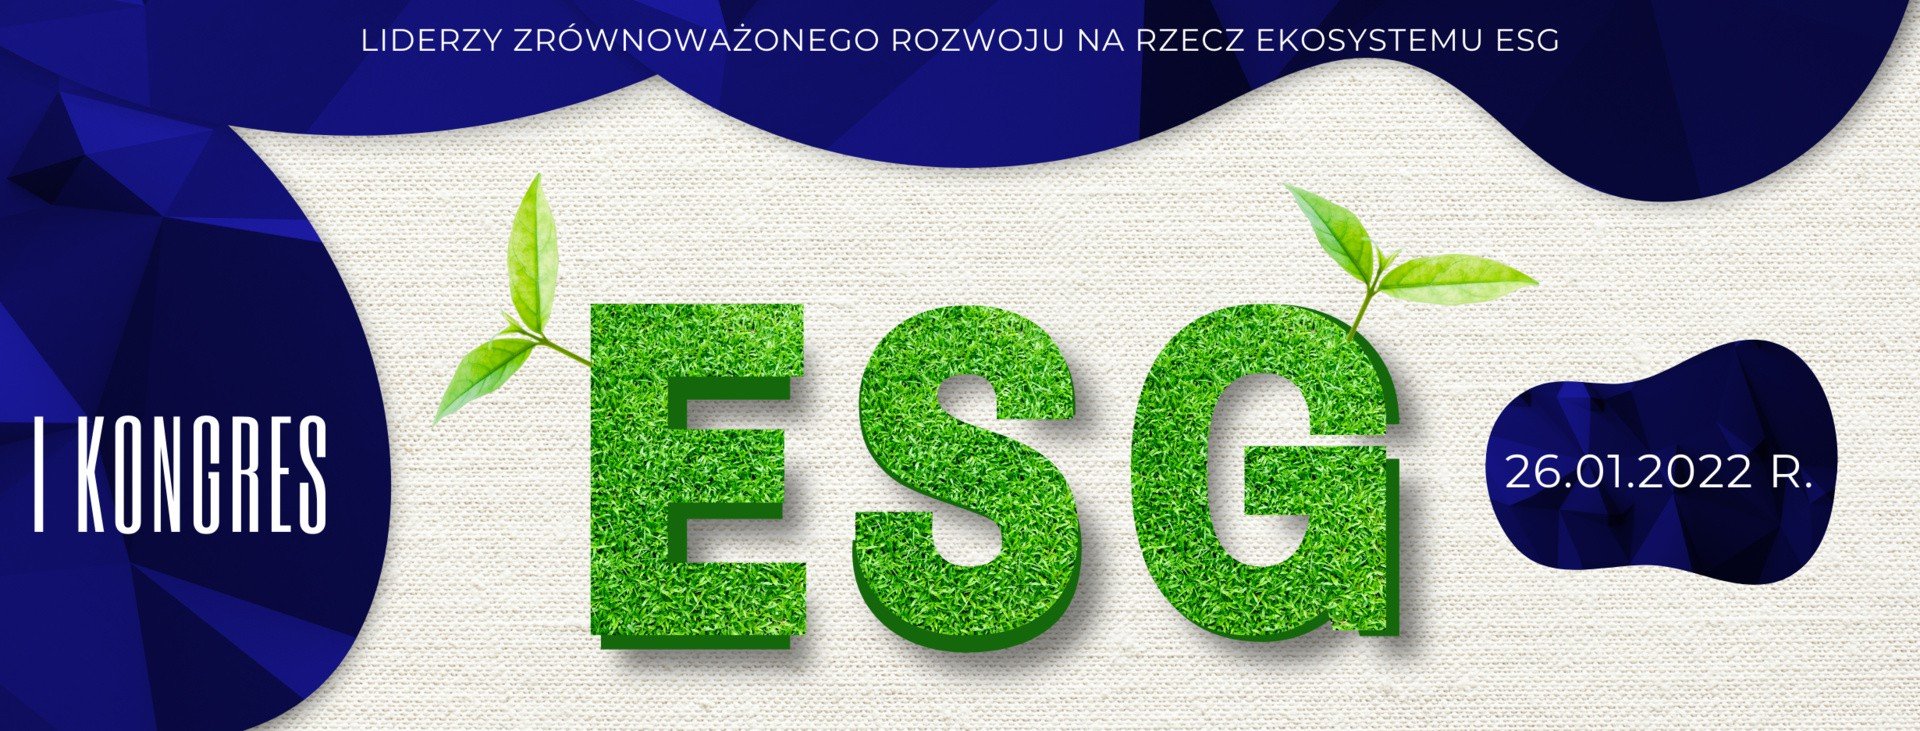 I Kongres ESG już 26 stycznia 2022 r. Odbędzie się ważna dyskusja ekspertów  o przyszłości zrównoważonego rozwoju Polski | Portal i.pl